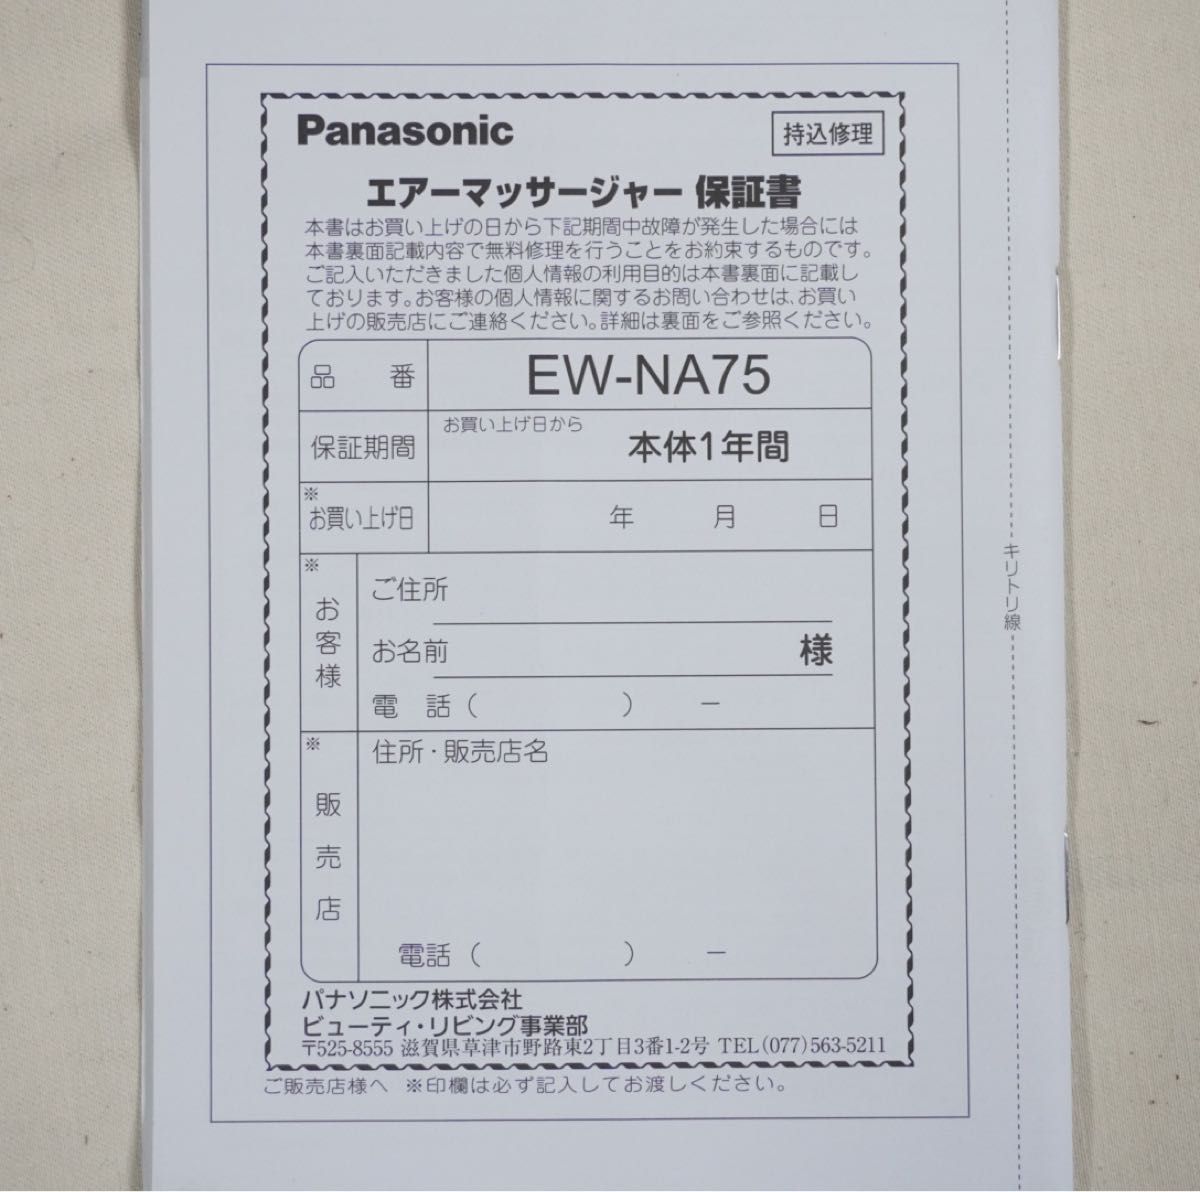 Panasonic パナソニック 骨盤おしりリフレ エアーマッサージャー EW-NA75-VP